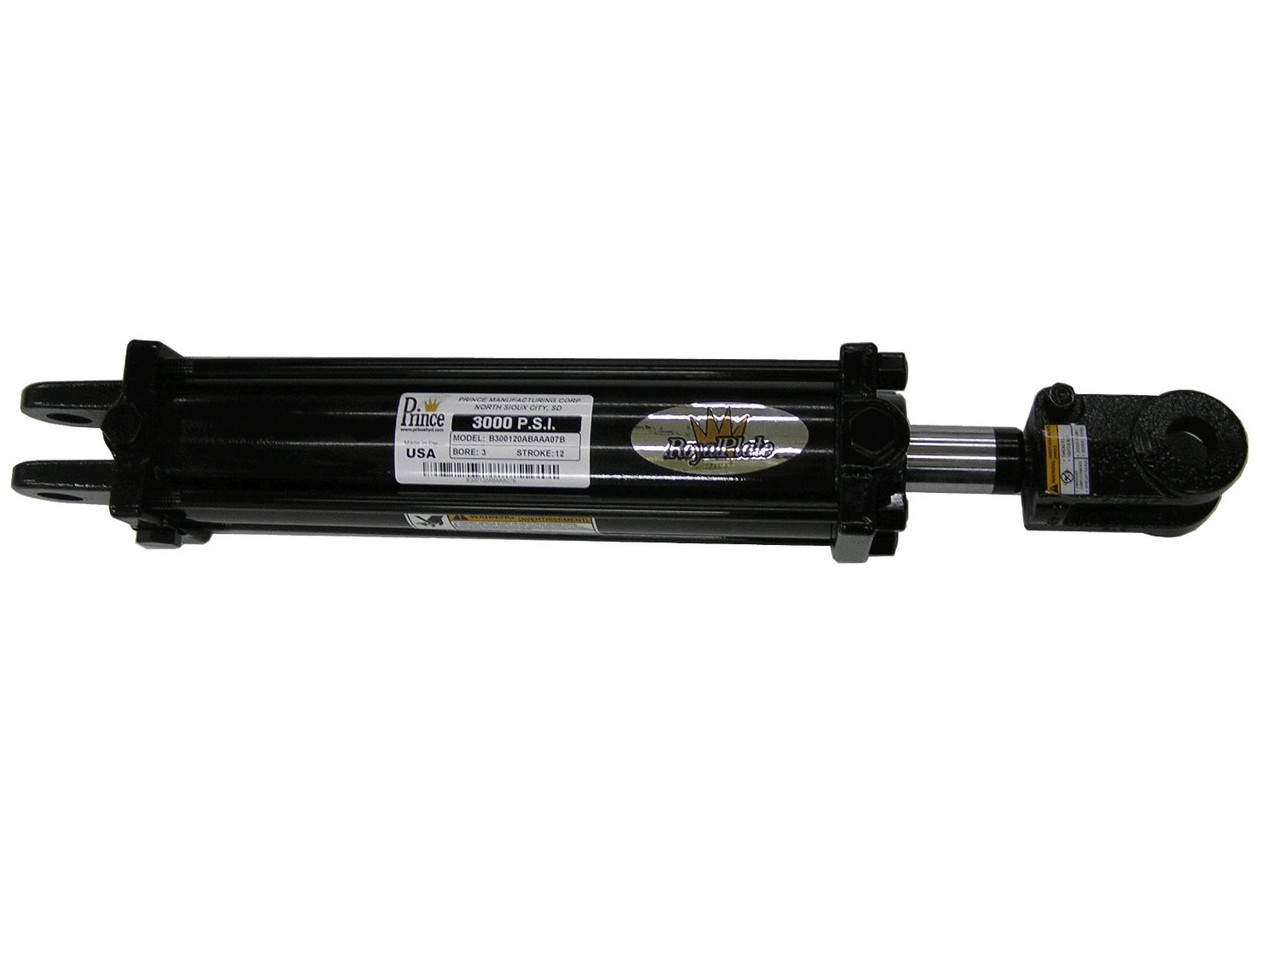 Prince Tie-rod Hydraulic Cylinder 4 x 8 1.75 Rod A400080Abaca07B